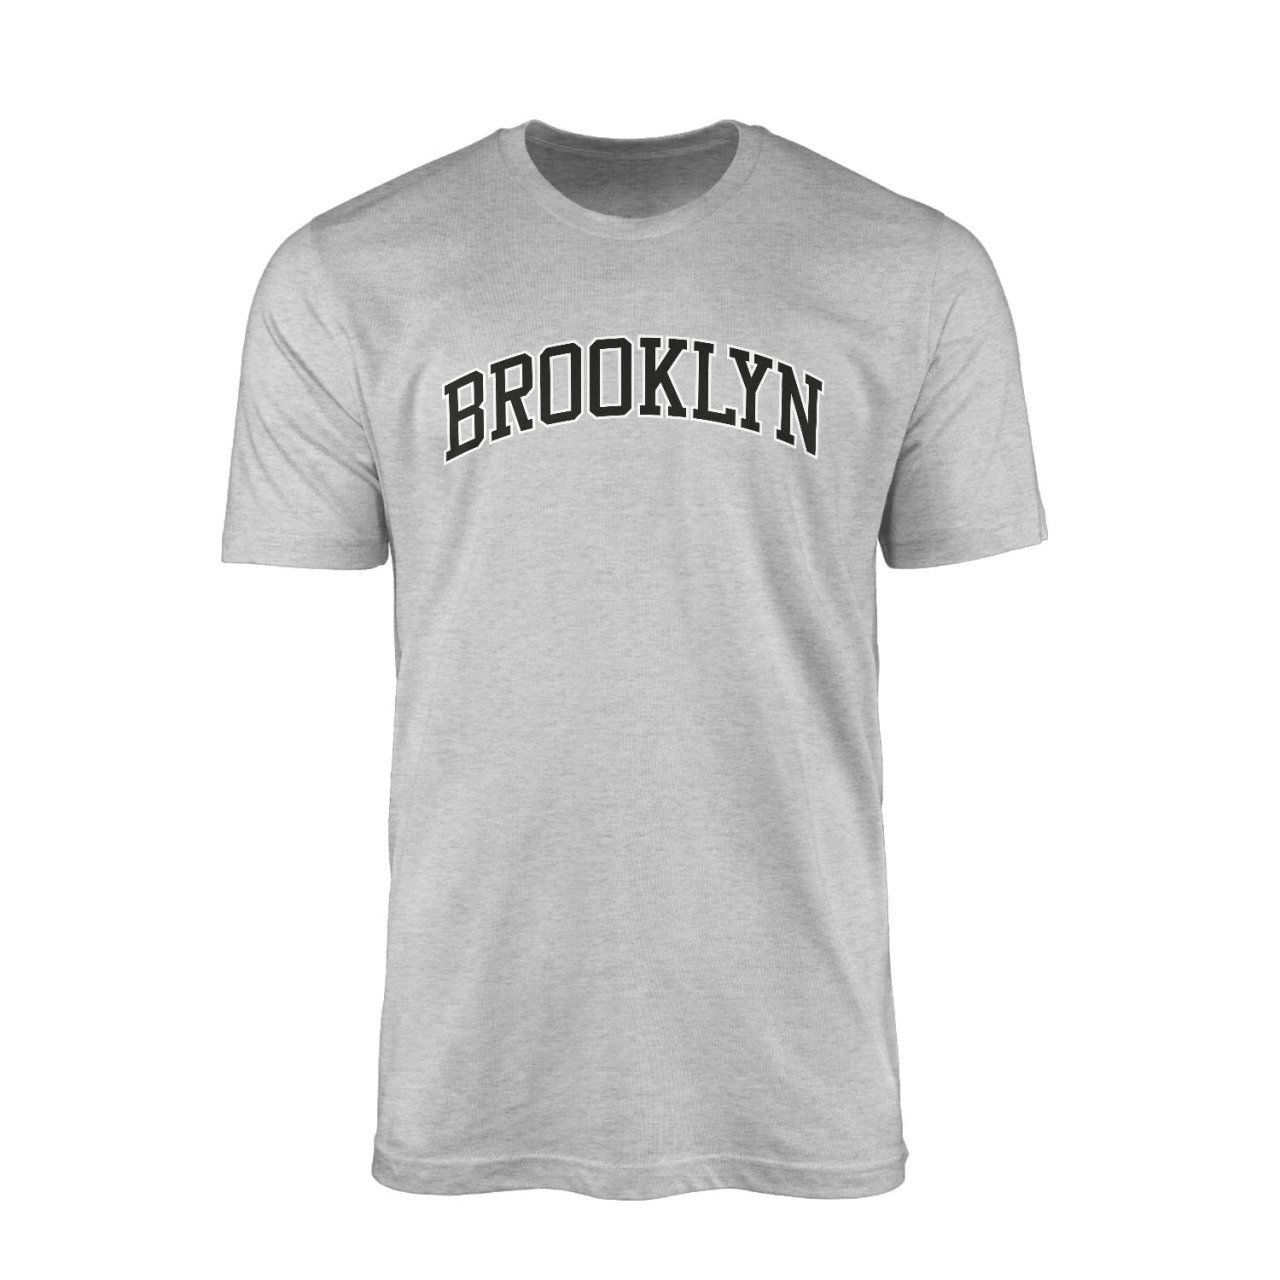 Brooklyn Arch Gri Tshirt